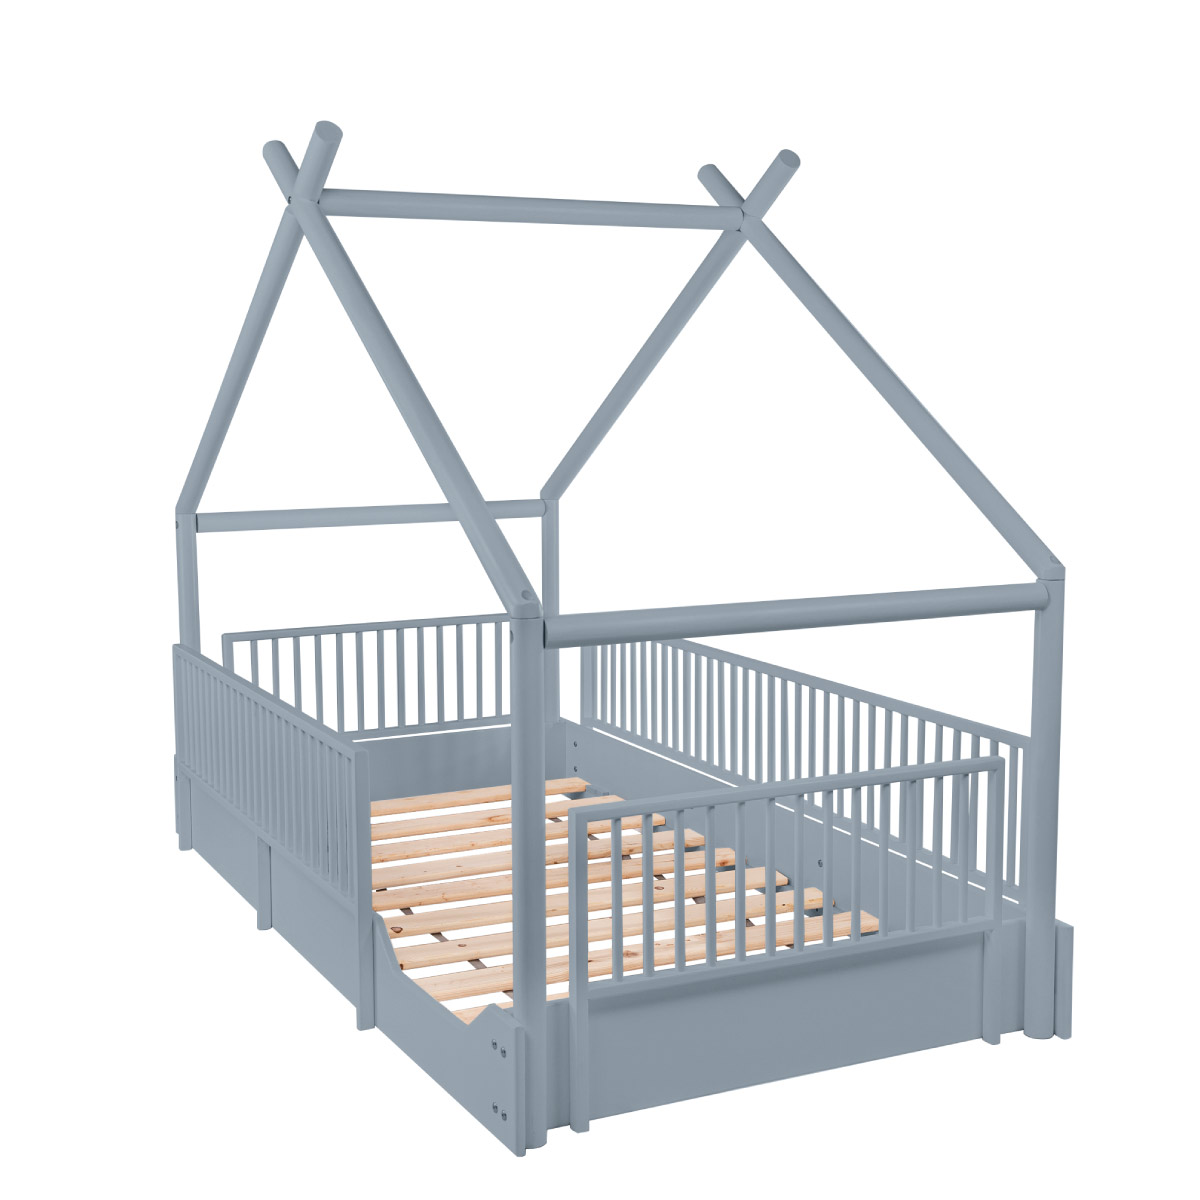 Cama moderna de madera para niños y niñas con barandales removibles DUDUK